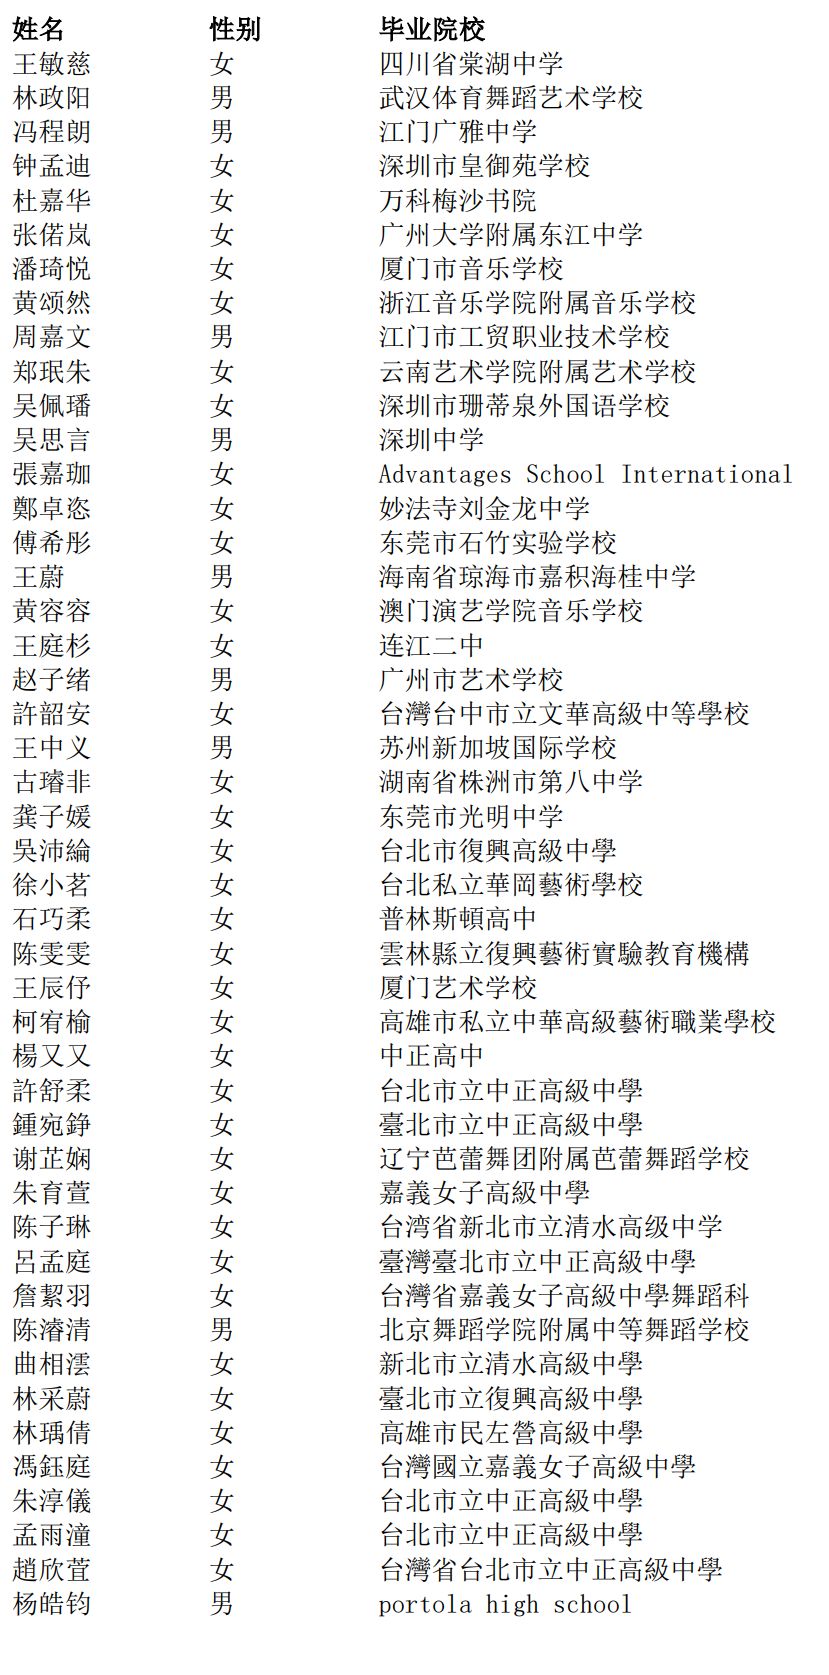 2022年北京舞蹈學院本科港澳臺僑考生必須于2022年3月1日至31日進行報名資格審核